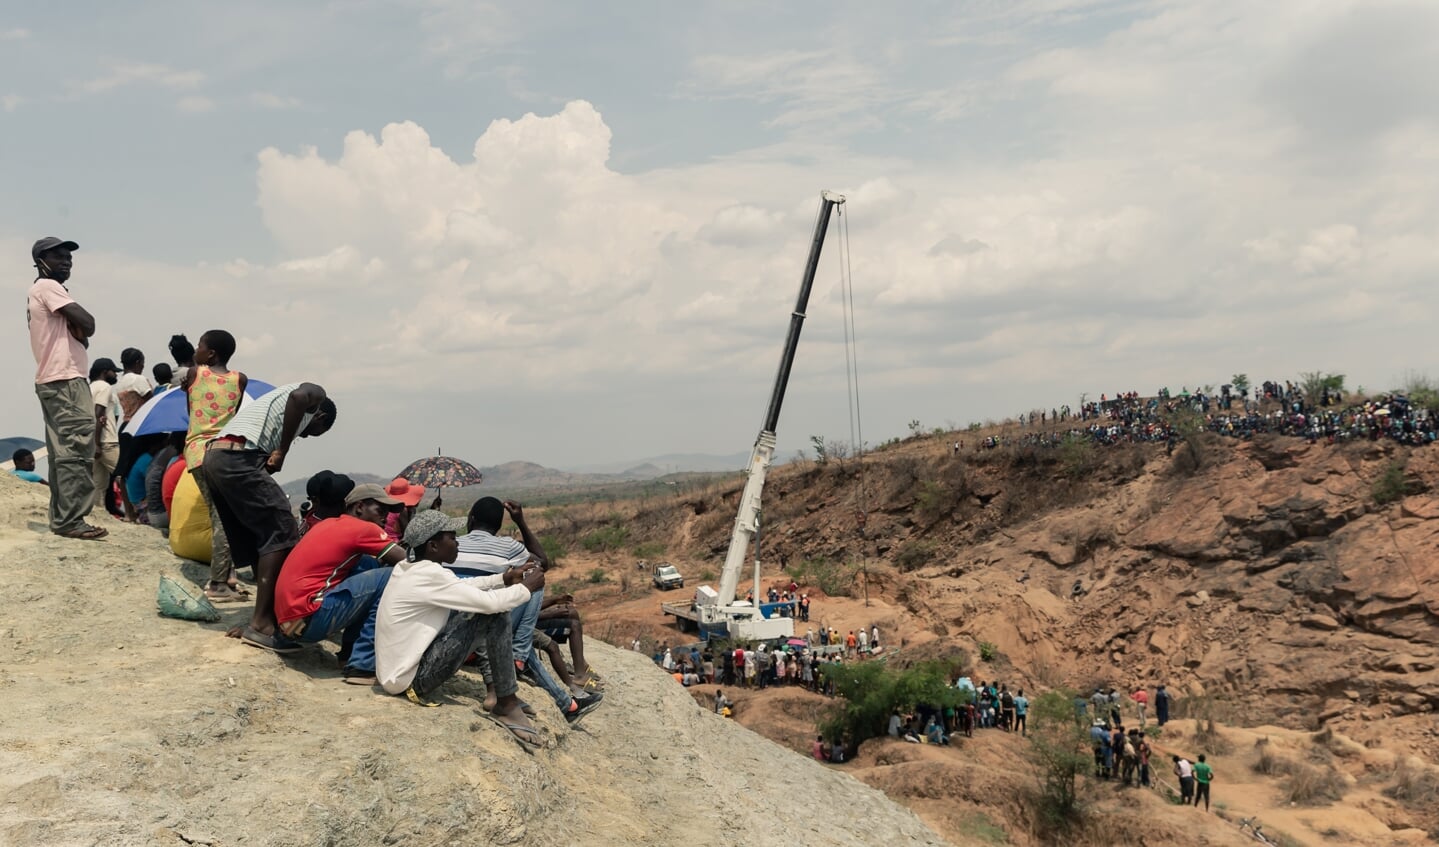 Omstanders kijken naar de reddingswerkers die proberen water uit de schacht te pompen om de mijnwerkers te bereiken.